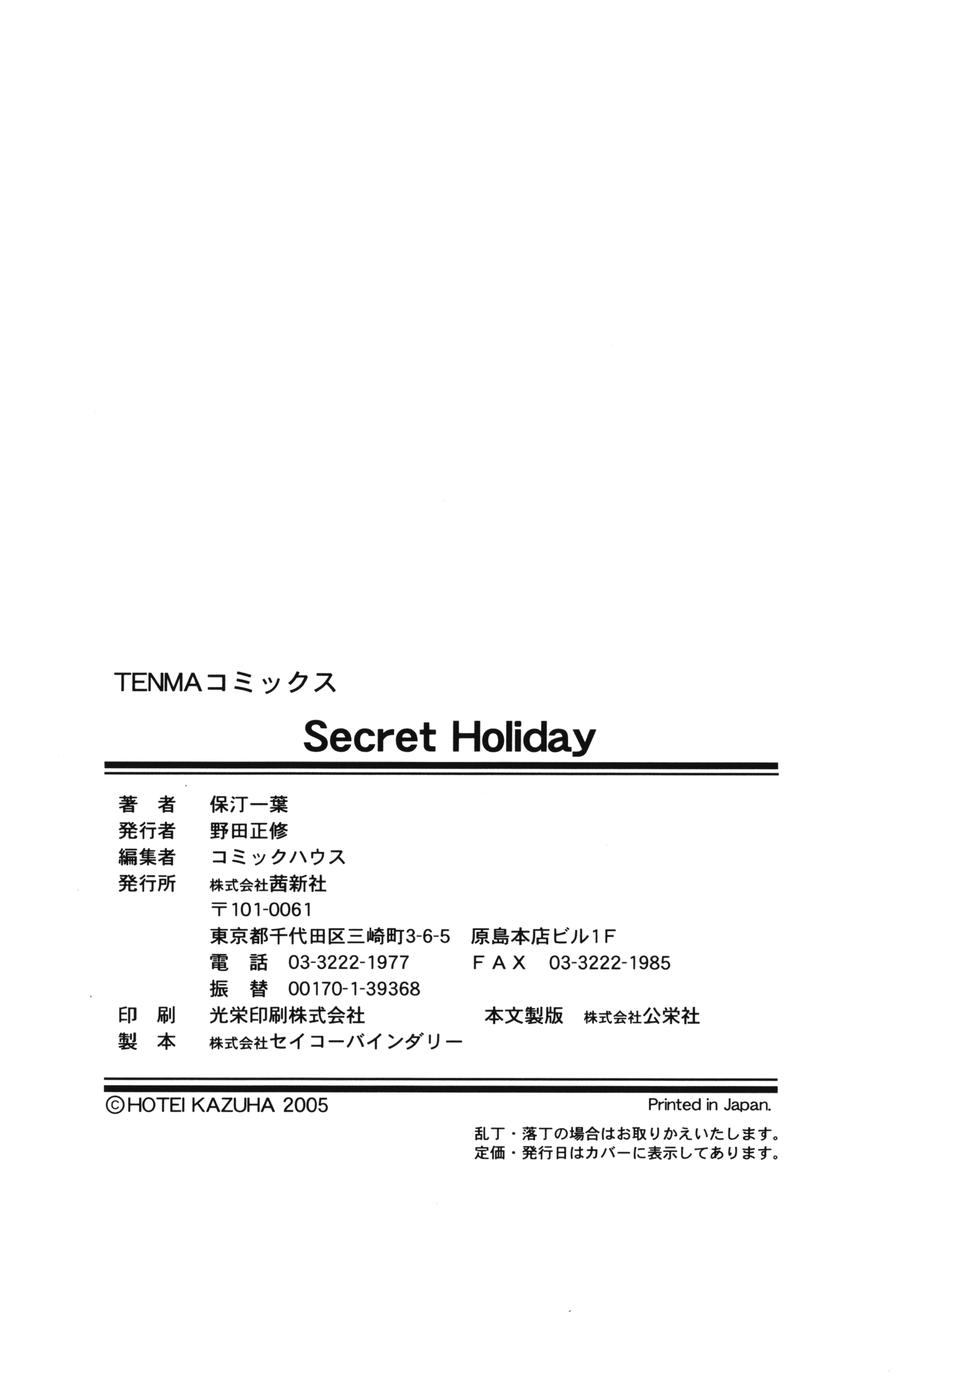 [Kazuha Hotei] Secret Holiday [保汀一葉] Secret Holiday